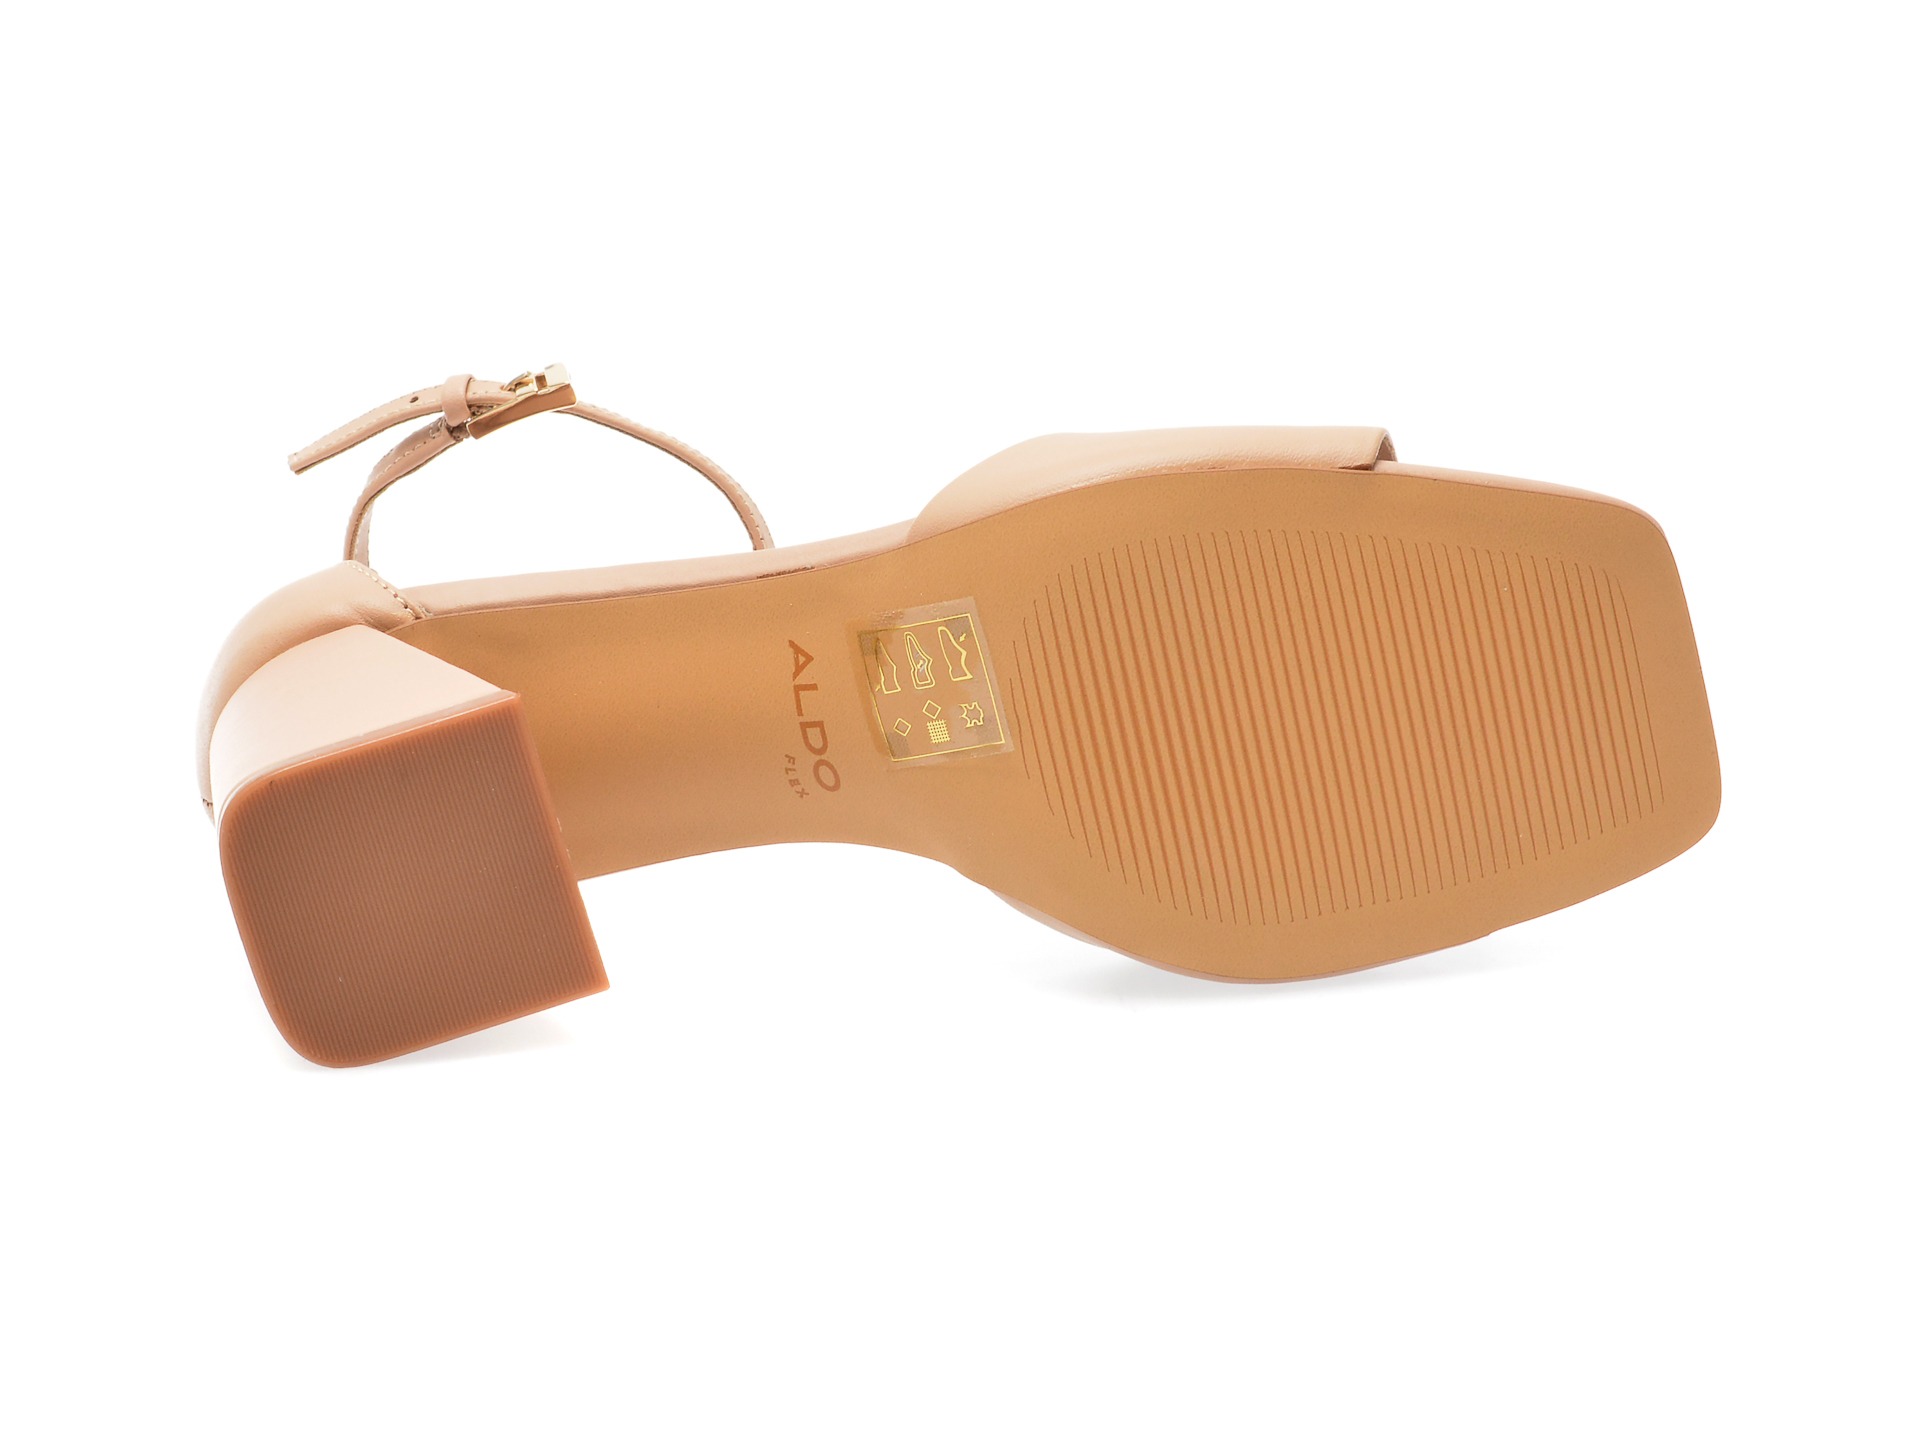 Sandale ALDO nude, SAFDIE270, din piele naturala